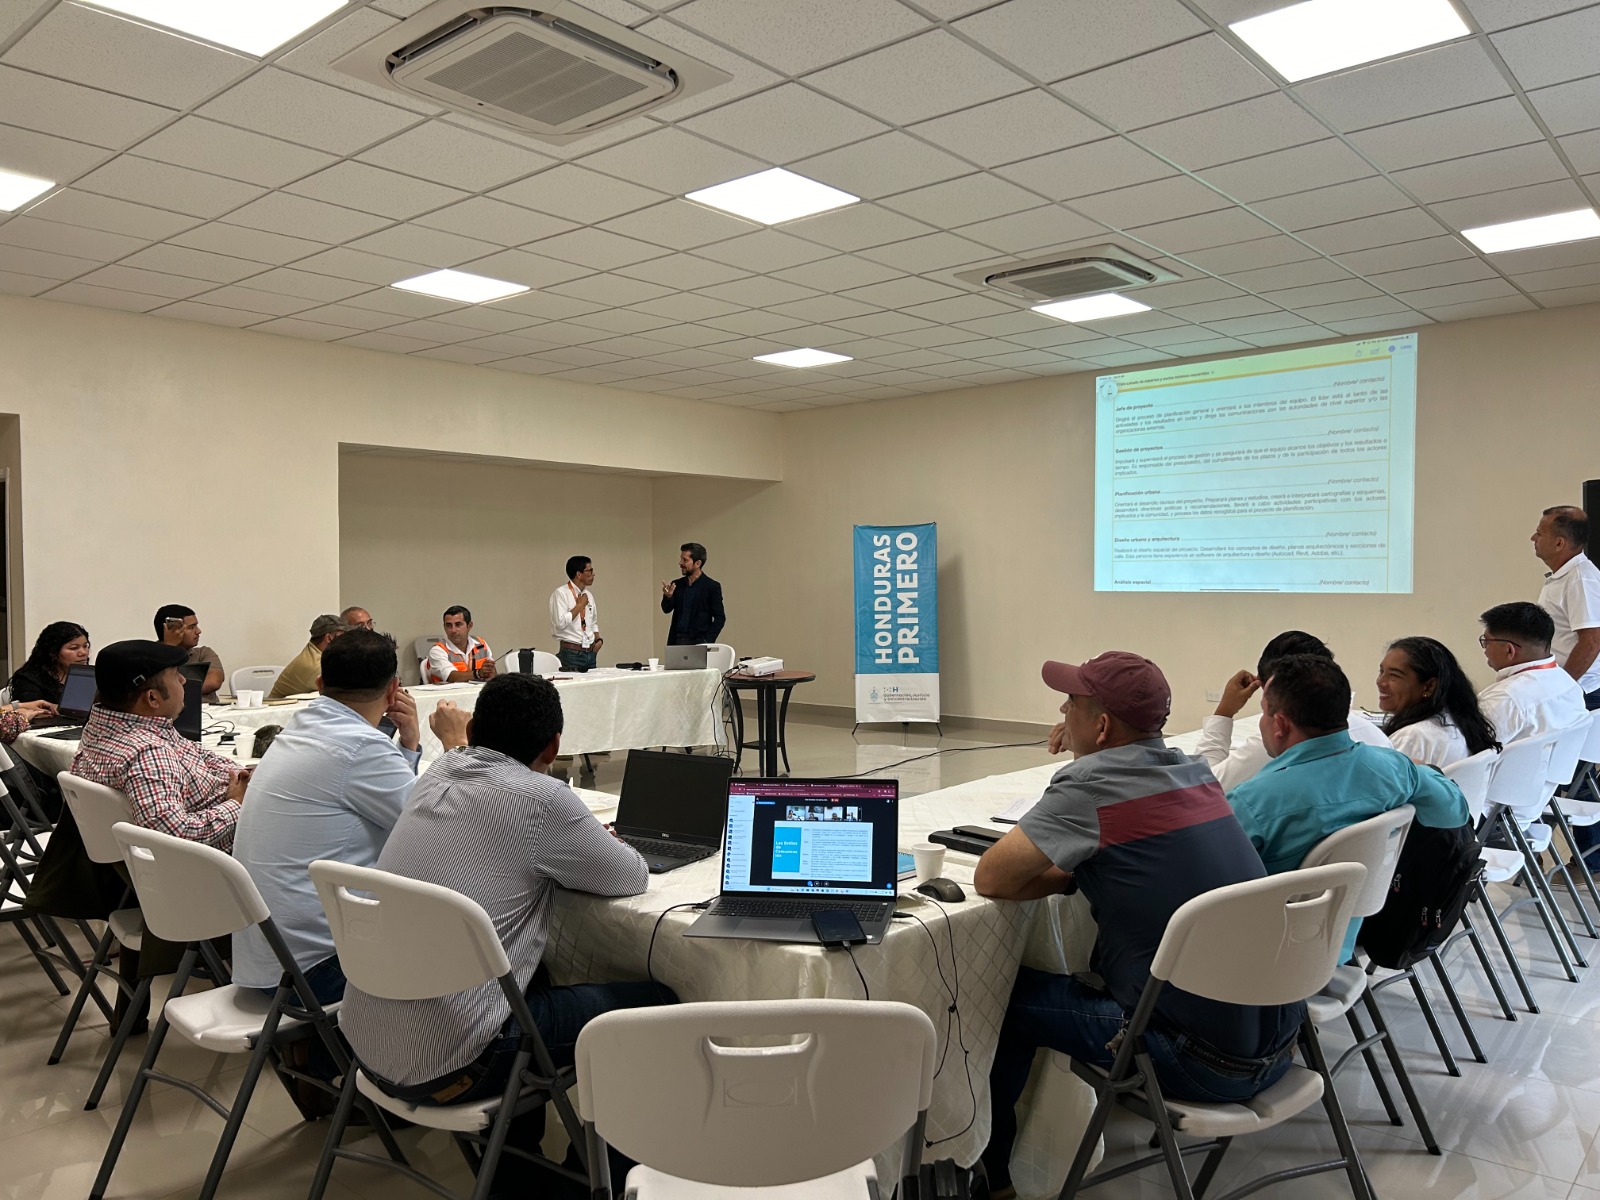 ONU-Habitat y PVAH avanzan en la elaboración de Planes de Desarrollo Urbano Municipal (PDUM) en Honduras.